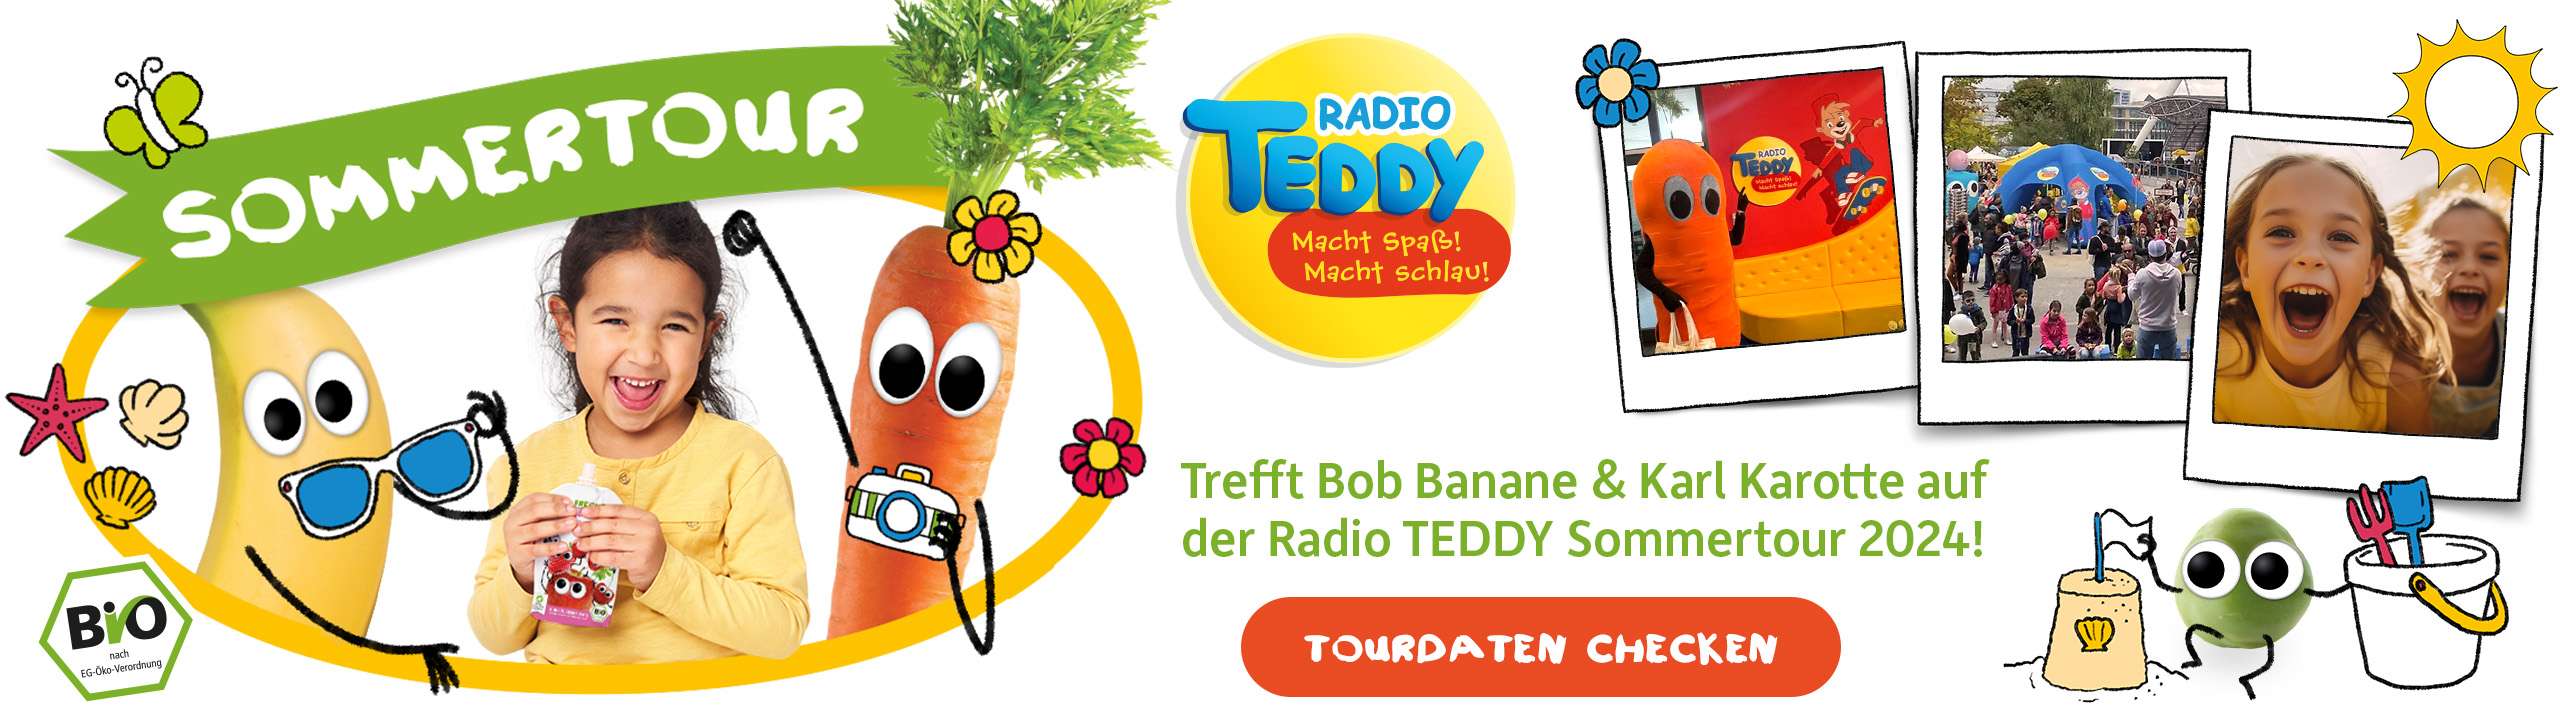 FF_Banner_Radio-TEDDY_l